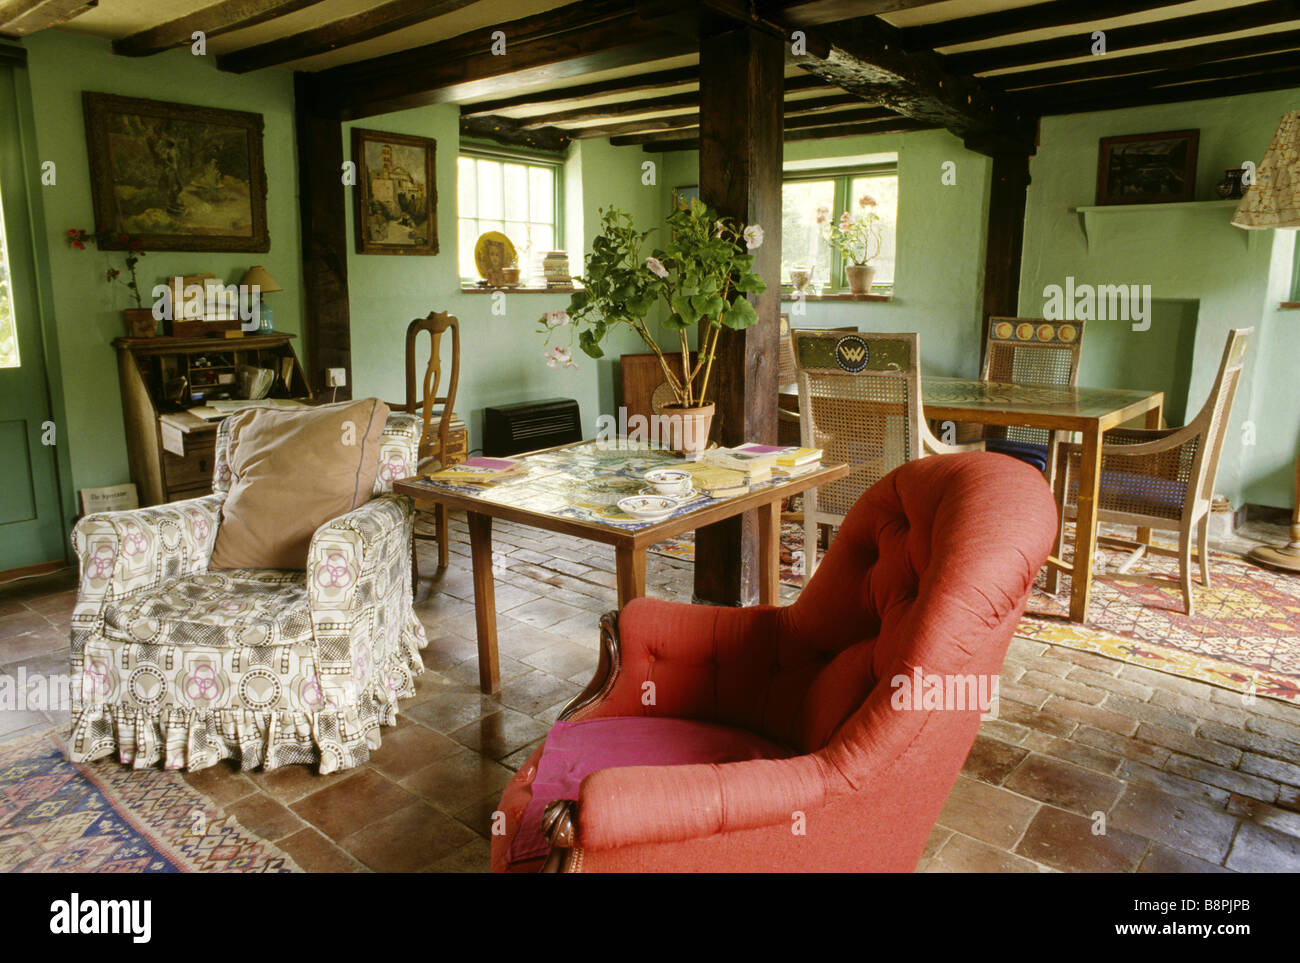 La maison de moine le salon avec des murs de peinture verte favorisée par Virginia Woolf Banque D'Images